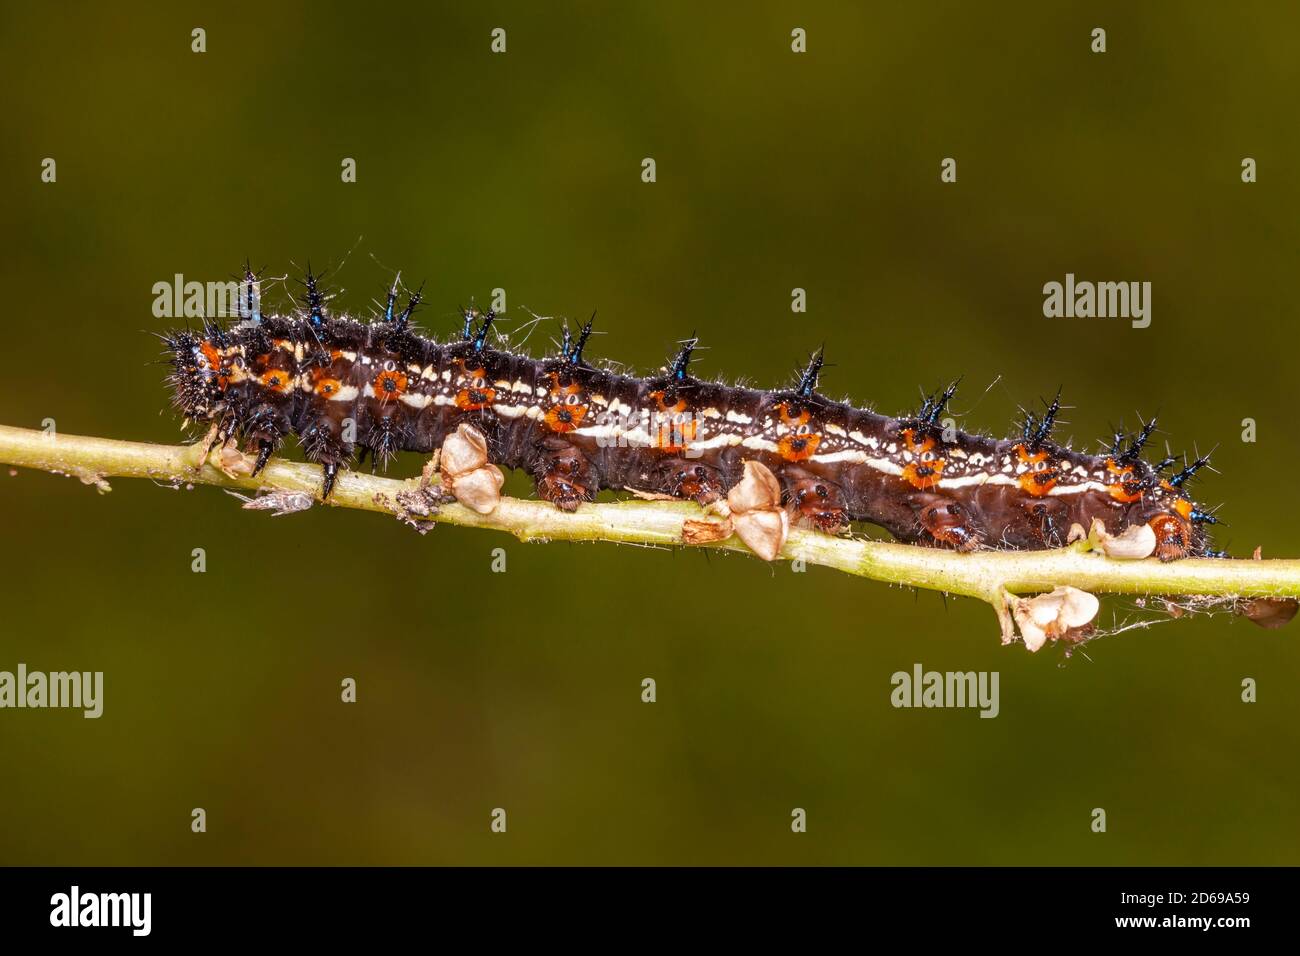 Common Buckeye (Junonia coenia) caterpillar (larva) Stock Photo